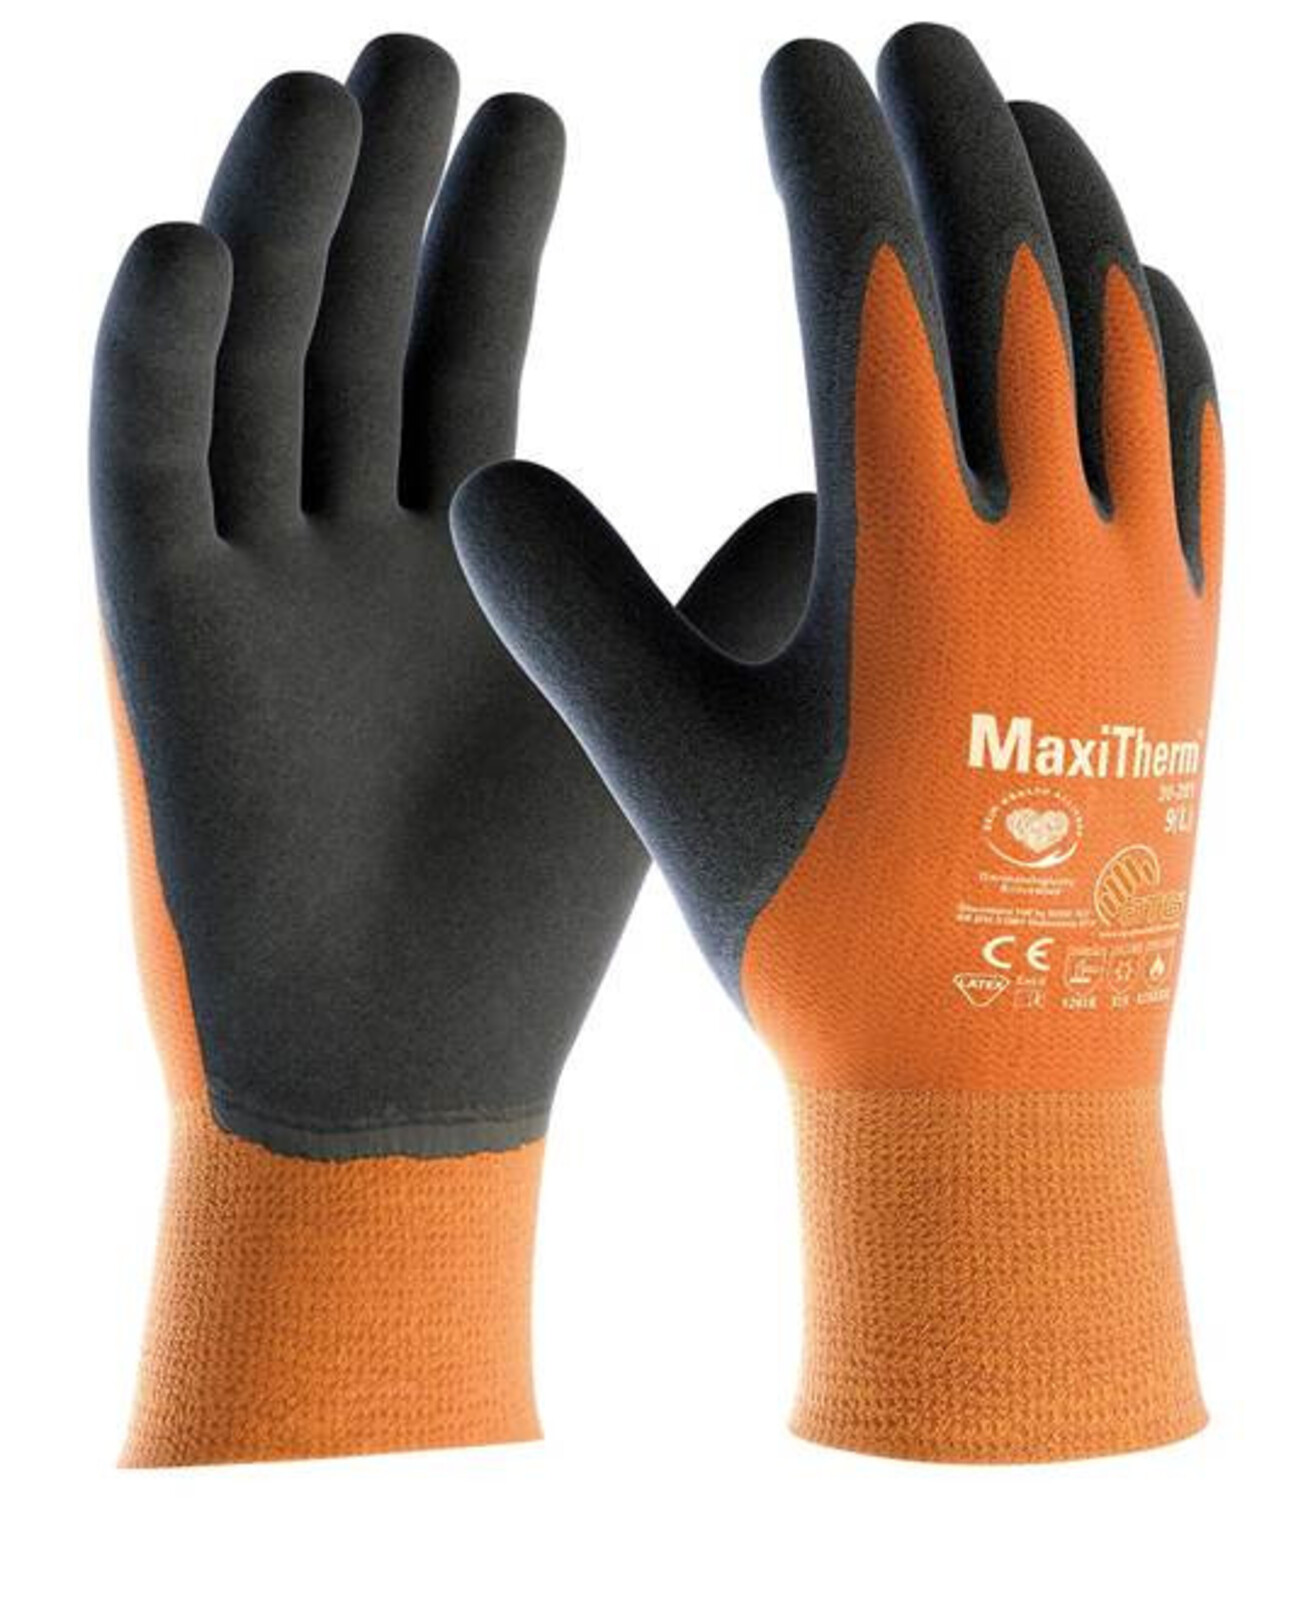 Zimné rukavice ATG  MaxiTherm 30-201 (12 párov) - veľkosť: 11/XXL, farba: oranžová